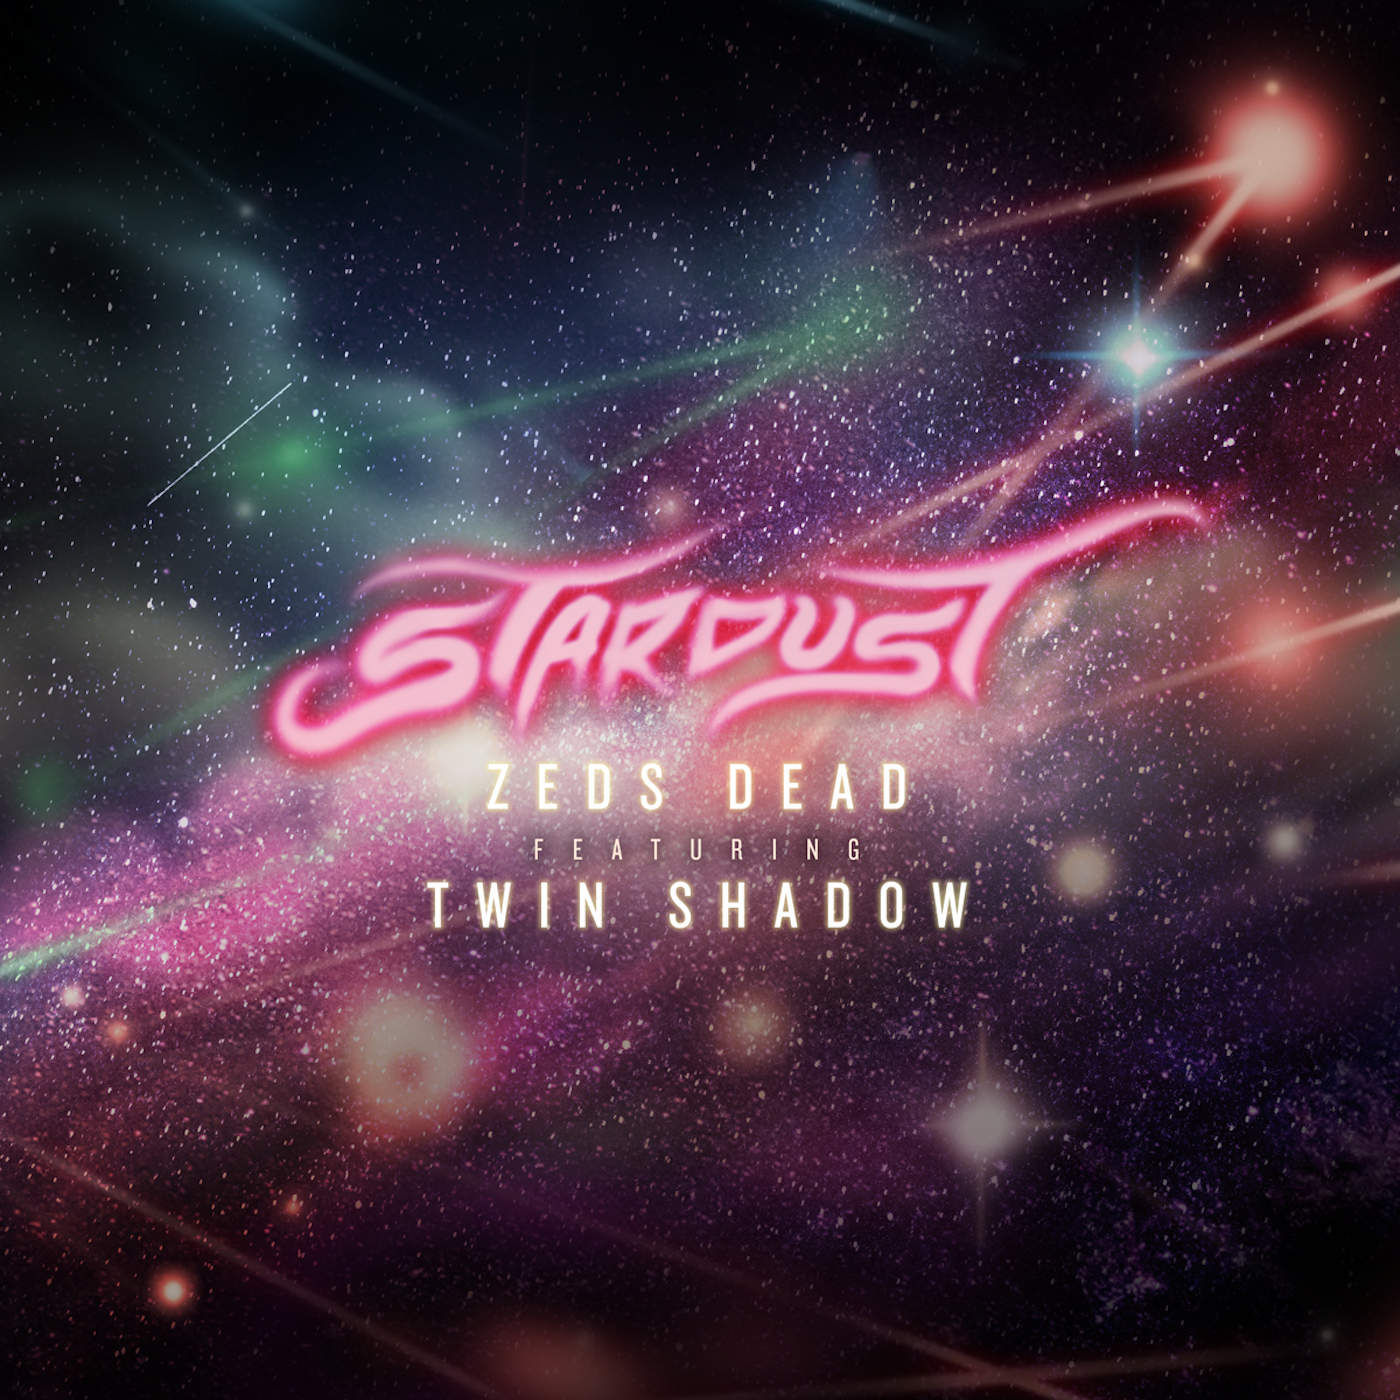 Zeds Dead - Stardust (ft. Twin Shadow) [활기, 펑크, 강렬]